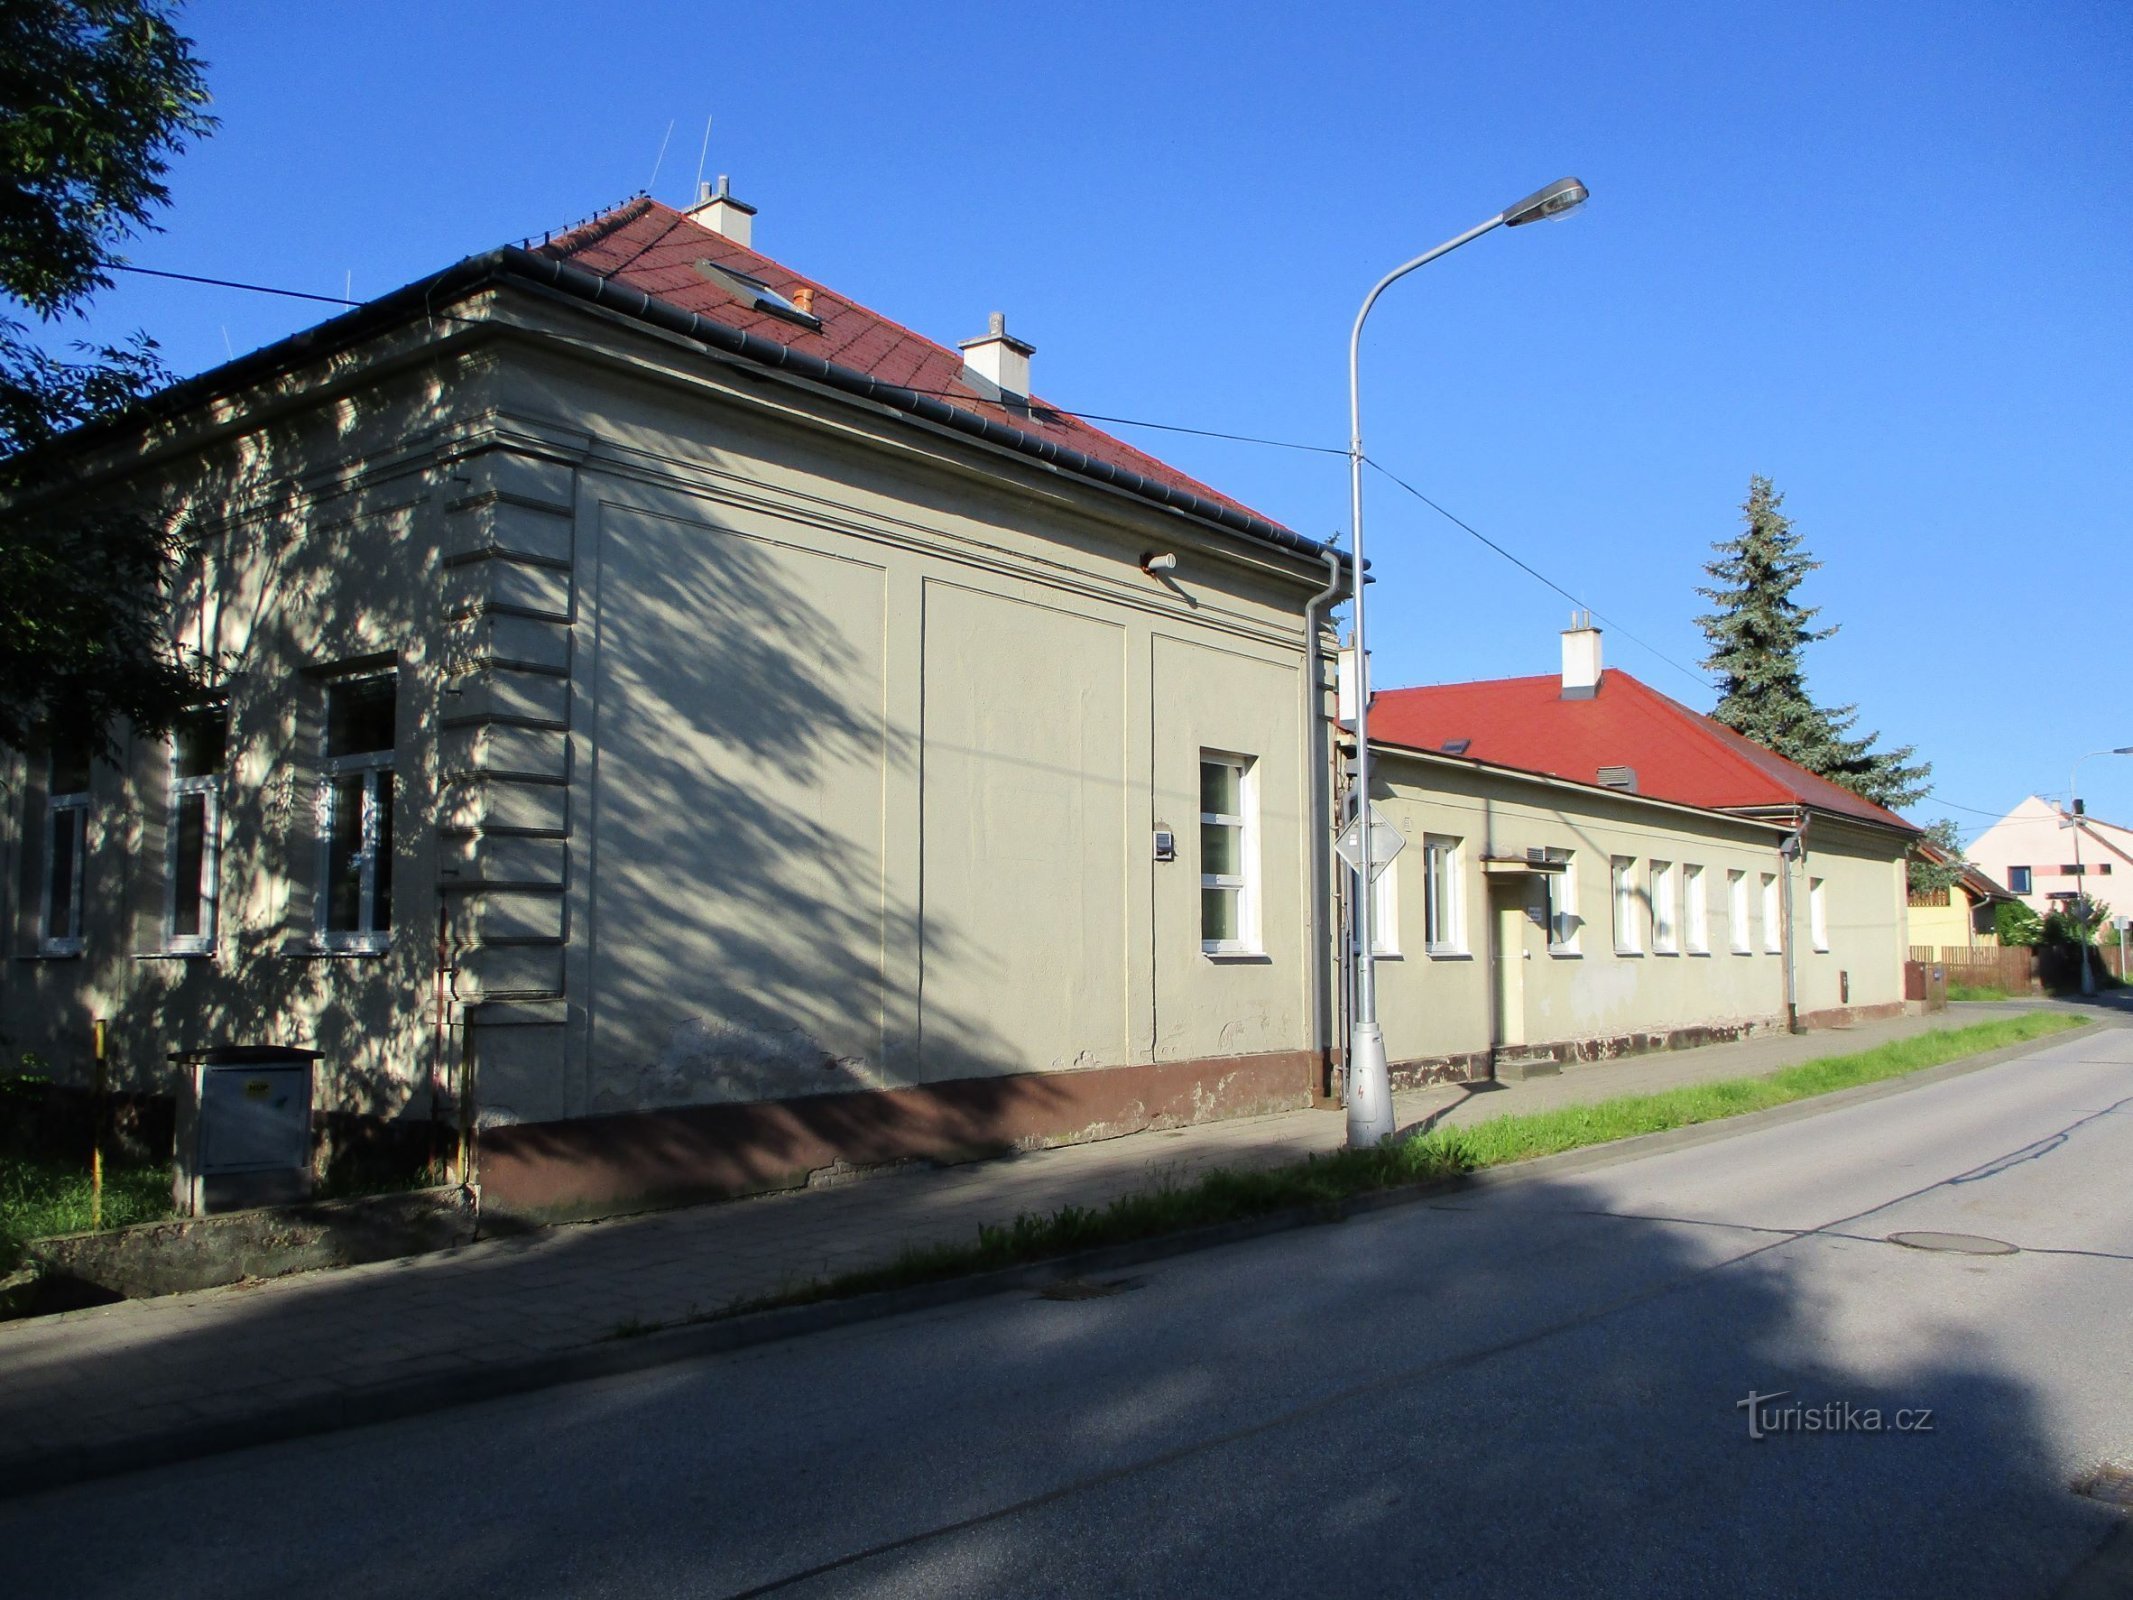 Escuela en Březhrad (Hradec Králové, 9.6.2019/XNUMX/XNUMX)